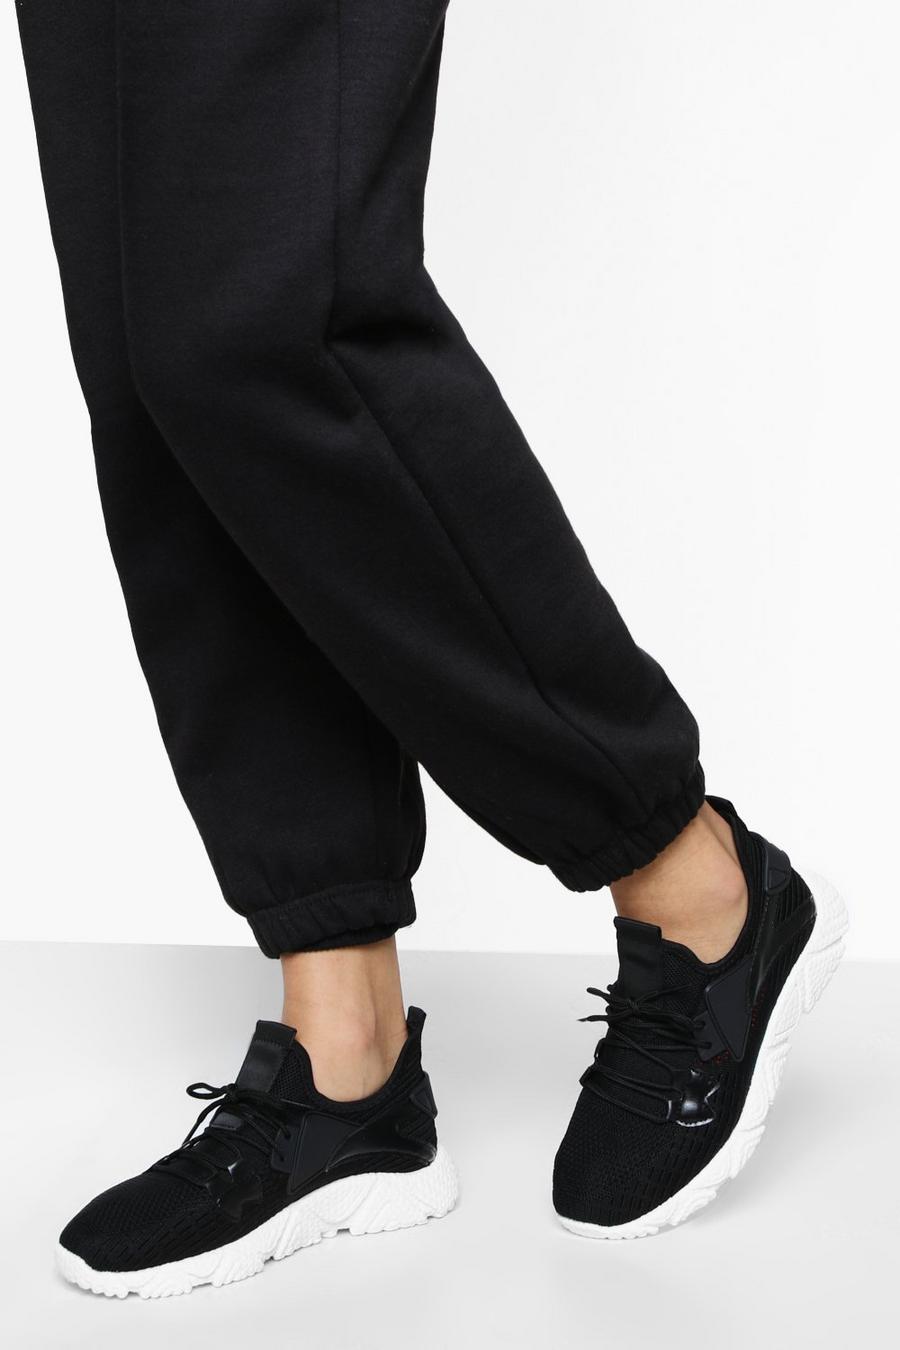 Zapatillas deportivas calcetín de tela, Black negro